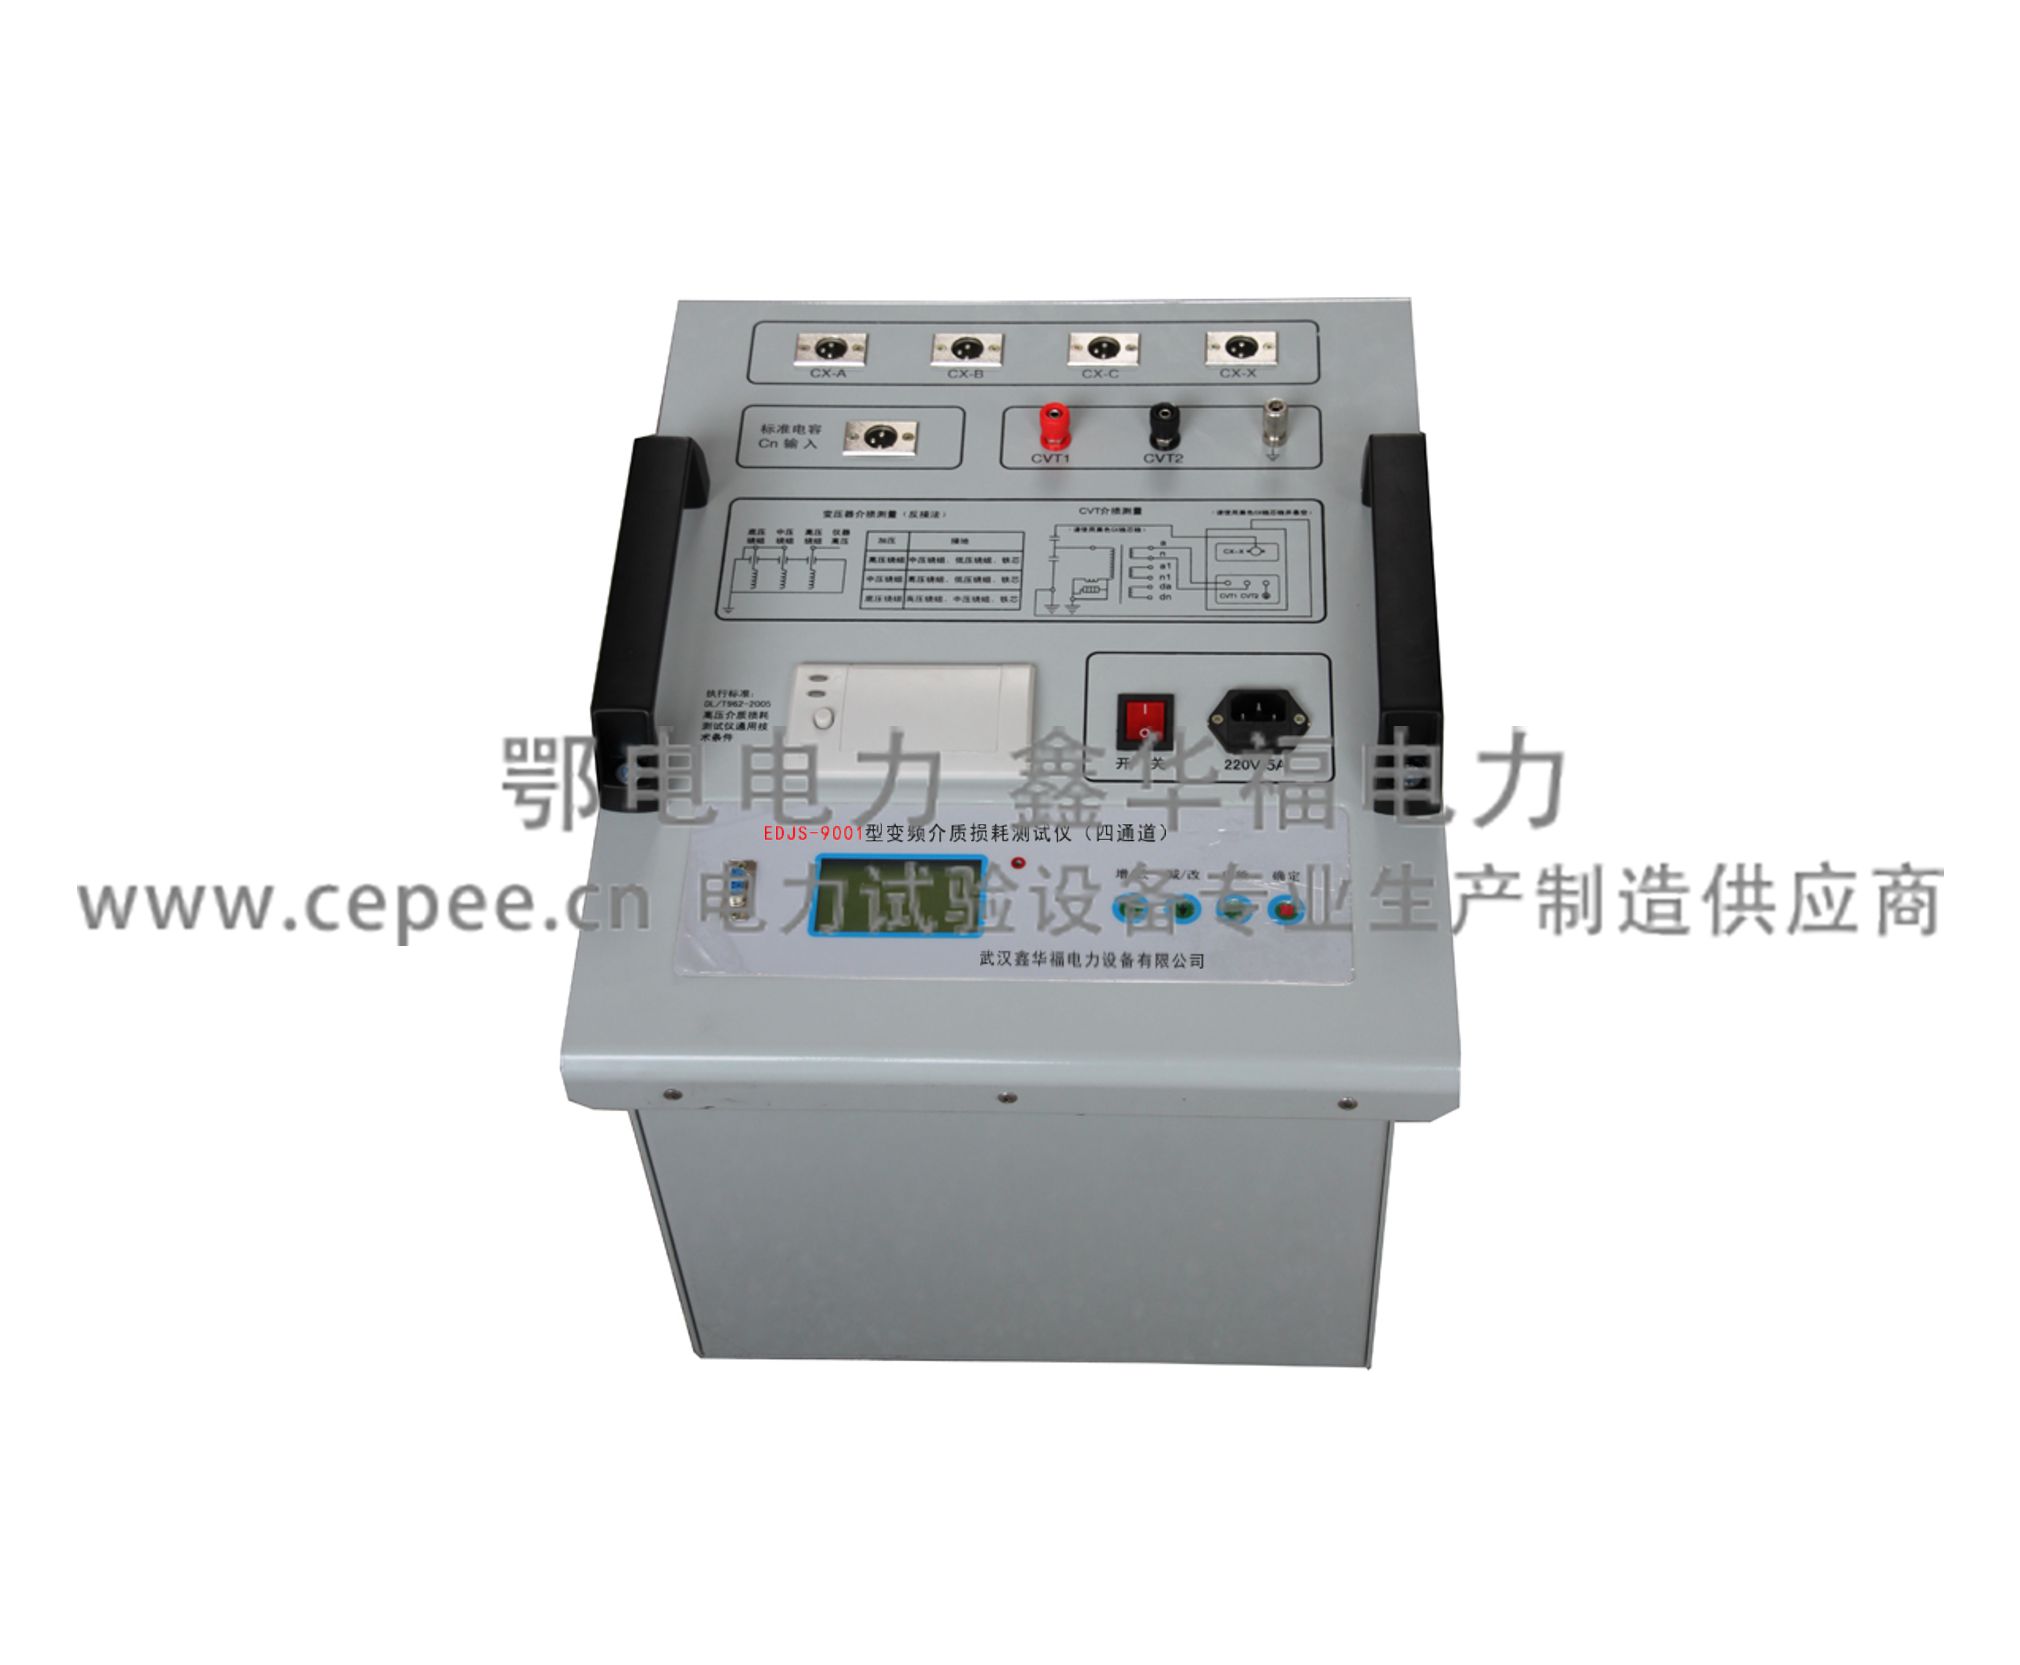 EDJS-9001变频介质损耗测试仪（四通道）